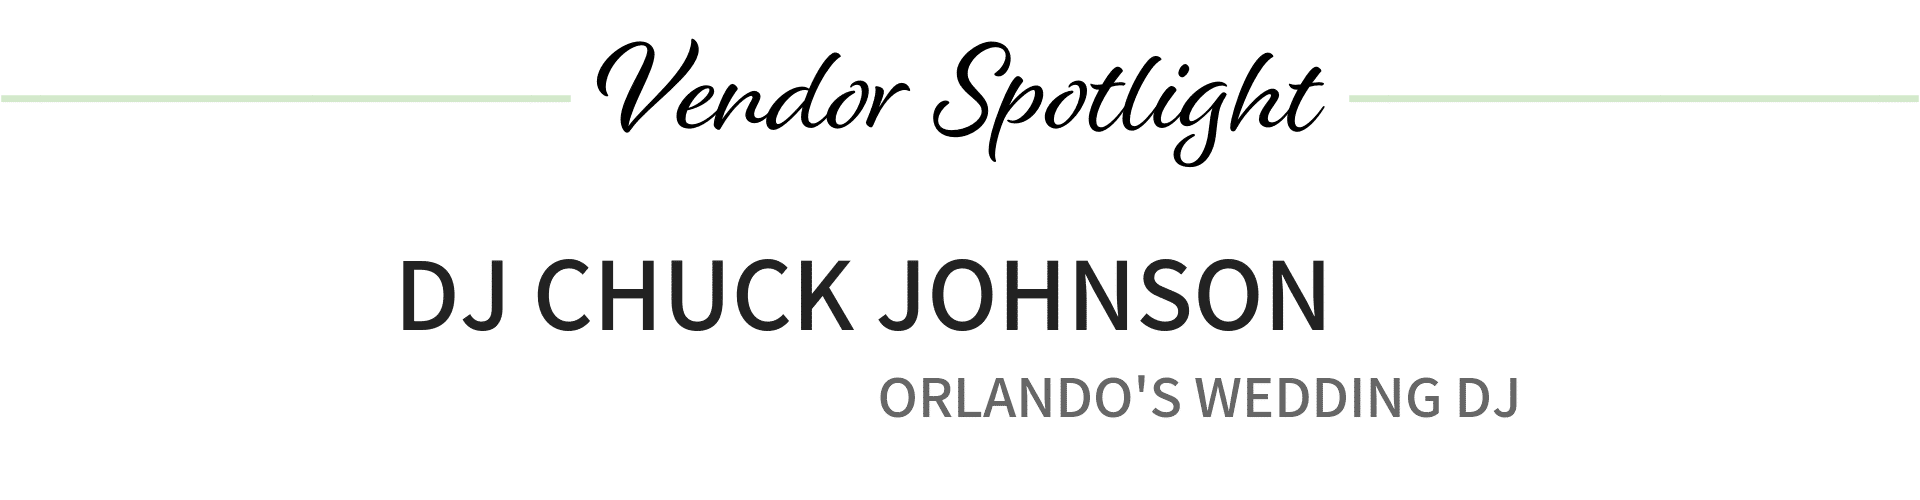 DJ Chuck Johnson, Orlando's wedding DJ